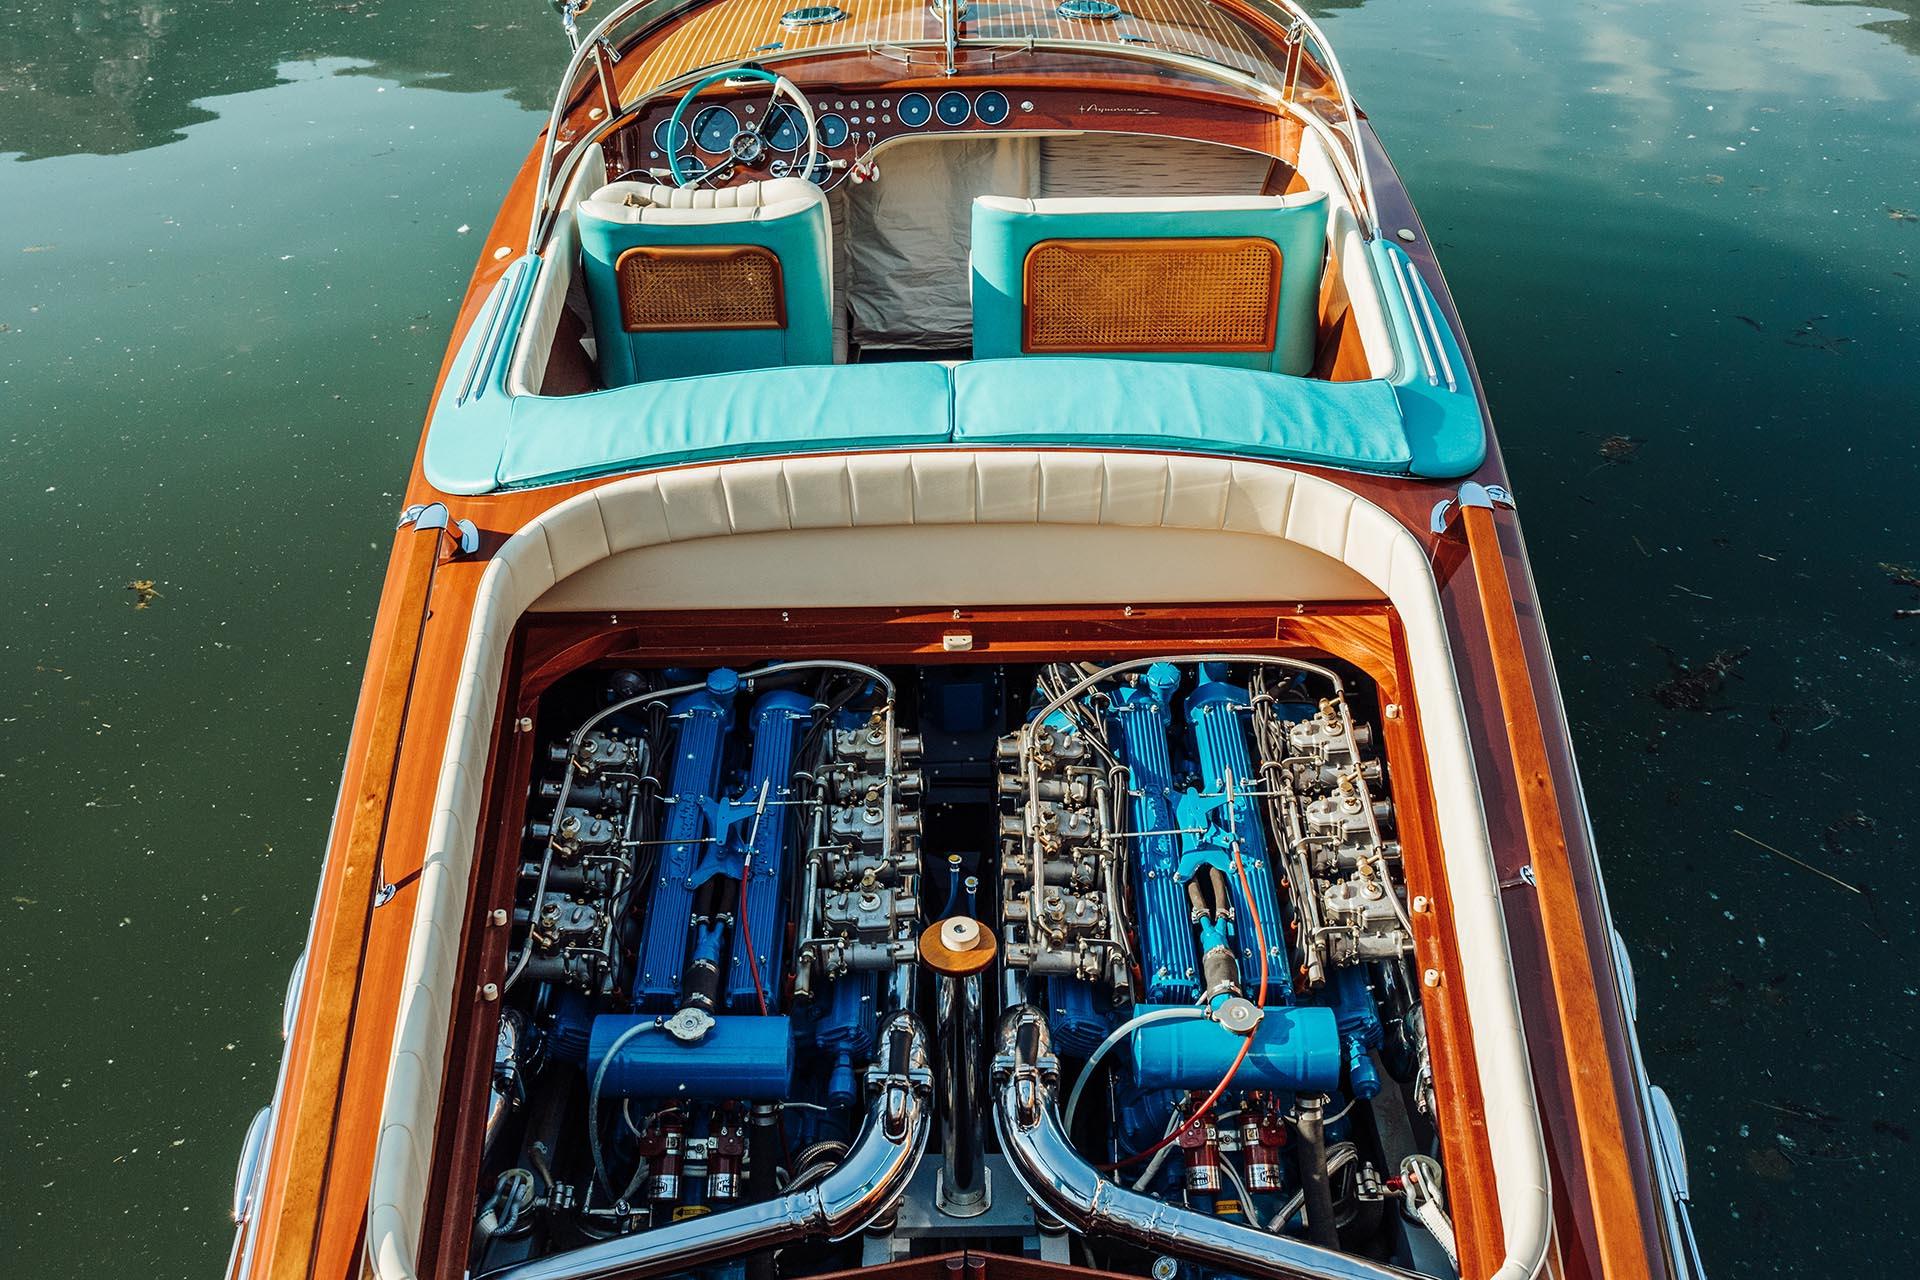 Riva Aquarama with Lamborghini V12 engine overlooking a harbor